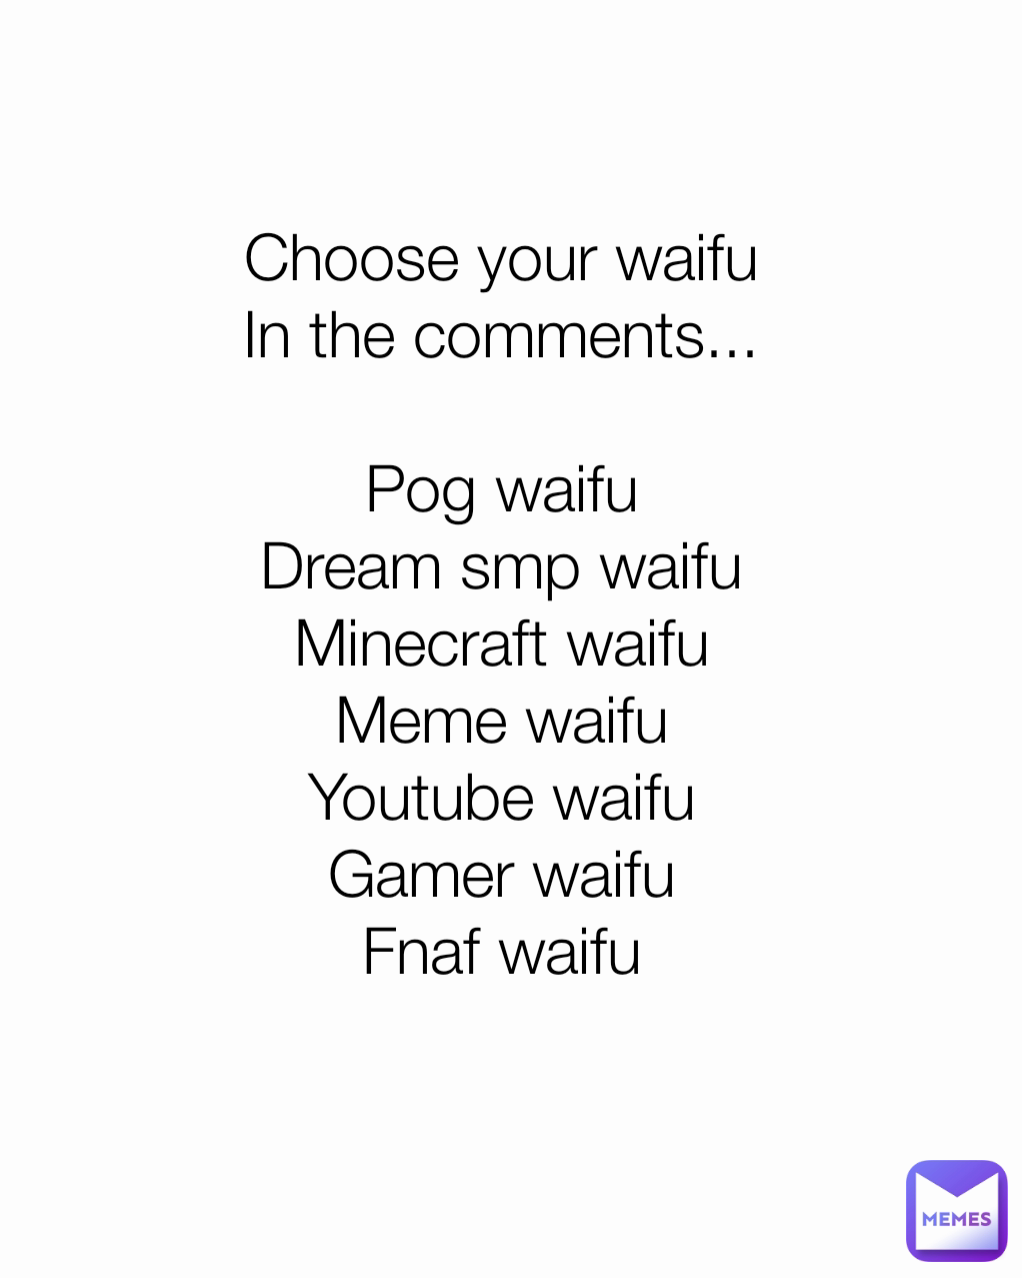 Choose your waifu
In the comments...

Pog waifu
Dream smp waifu
Minecraft waifu
Meme waifu
Youtube waifu
Gamer waifu
Fnaf waifu
